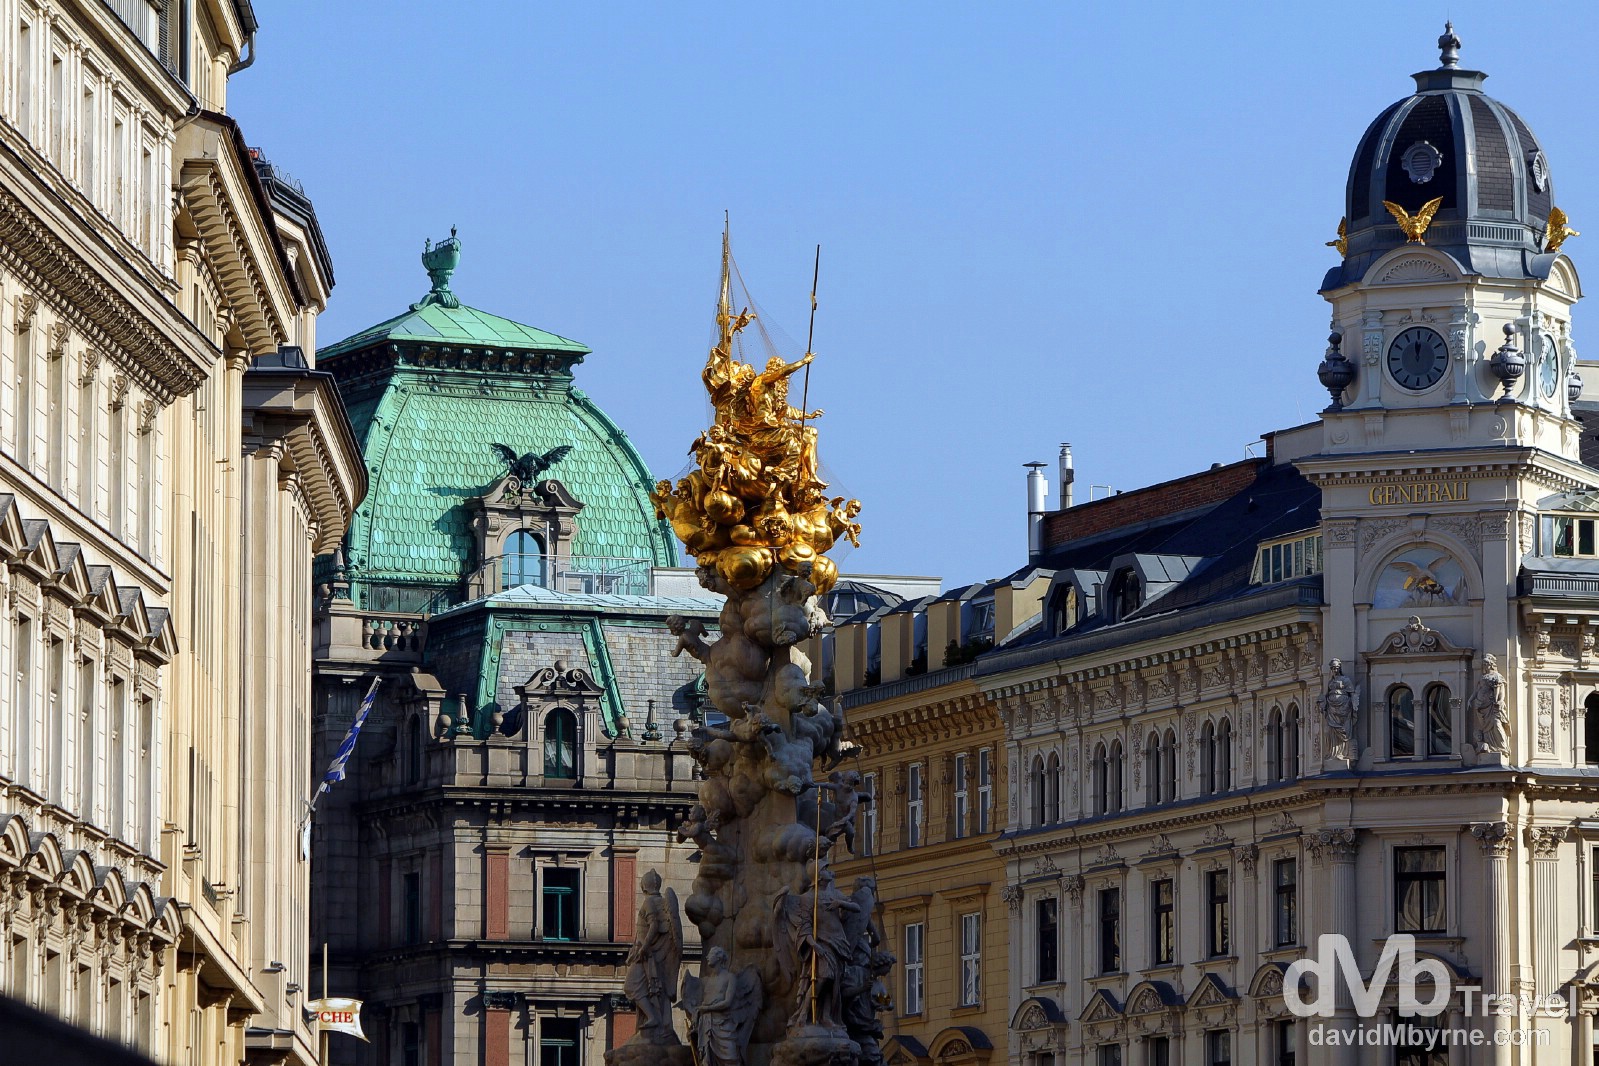 Buildings on Graben, a plush shopping street & the main pedestrian thoroughfare in Vienna, Austria. March 29th, 2014. 